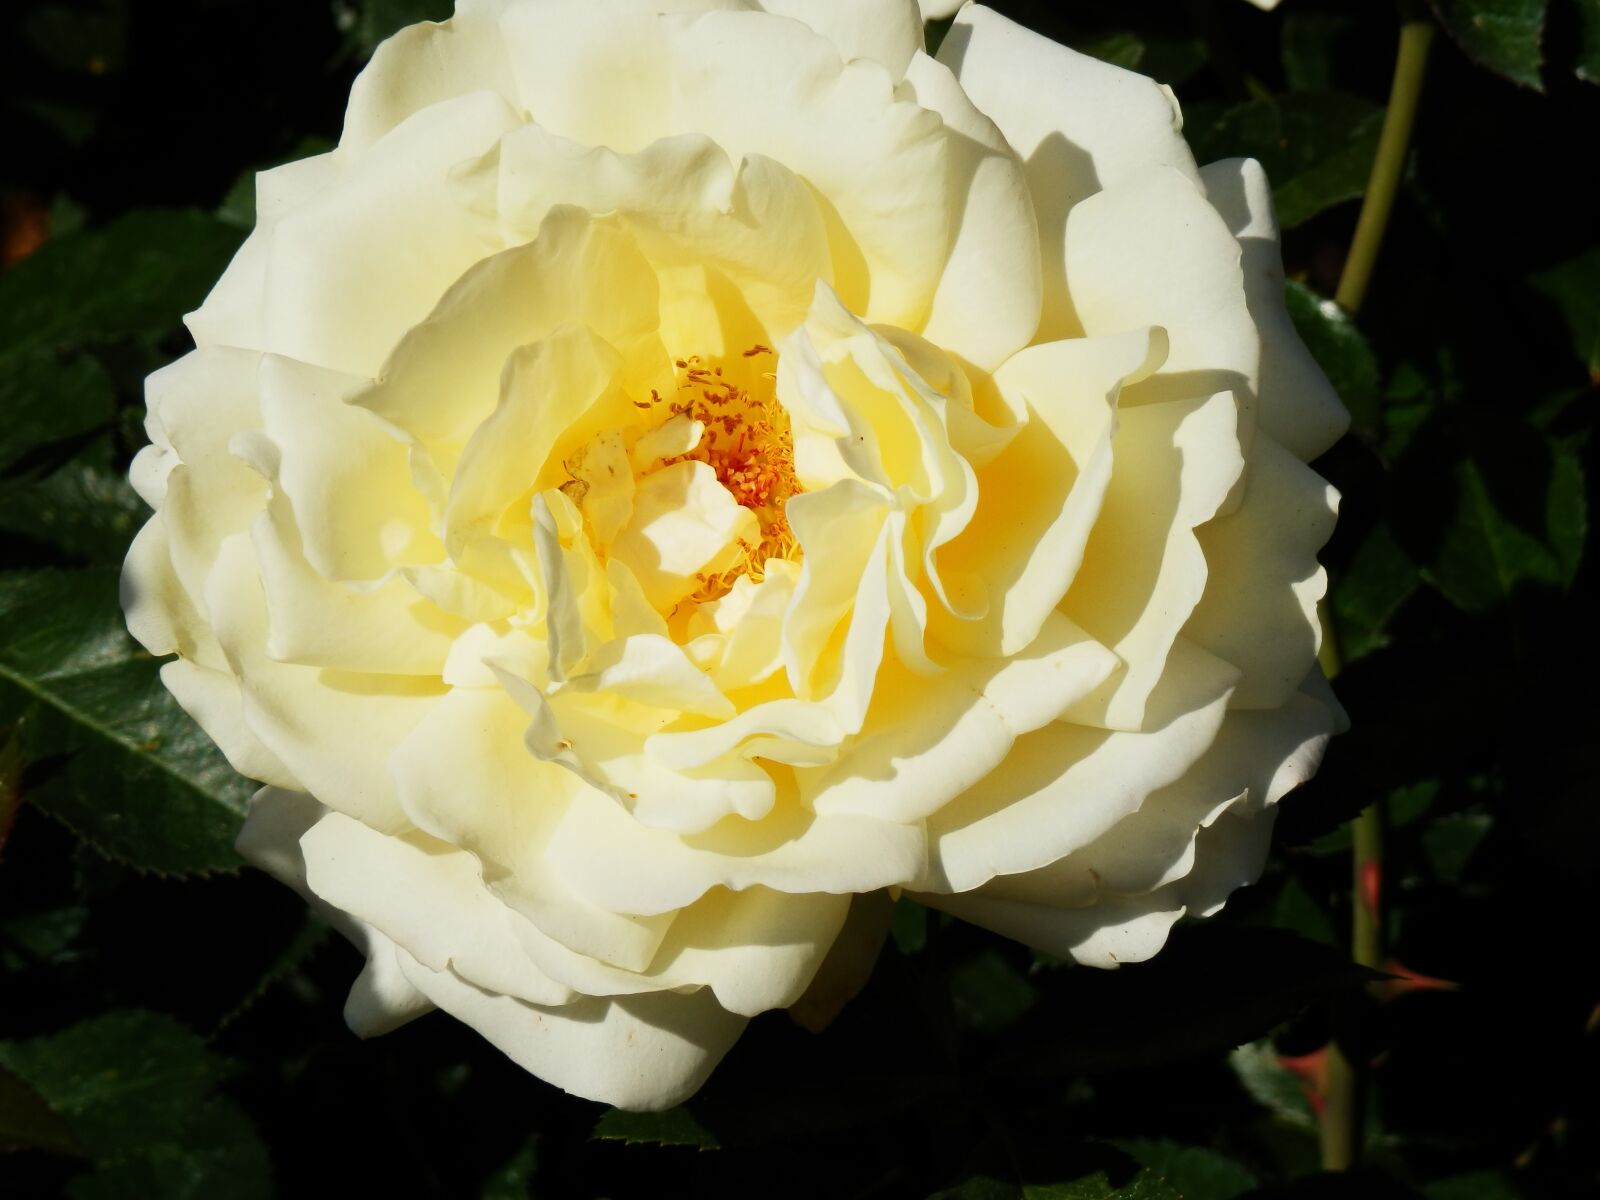 Olympus SZ-30MR sample photo. White rose, botanical gardens photography